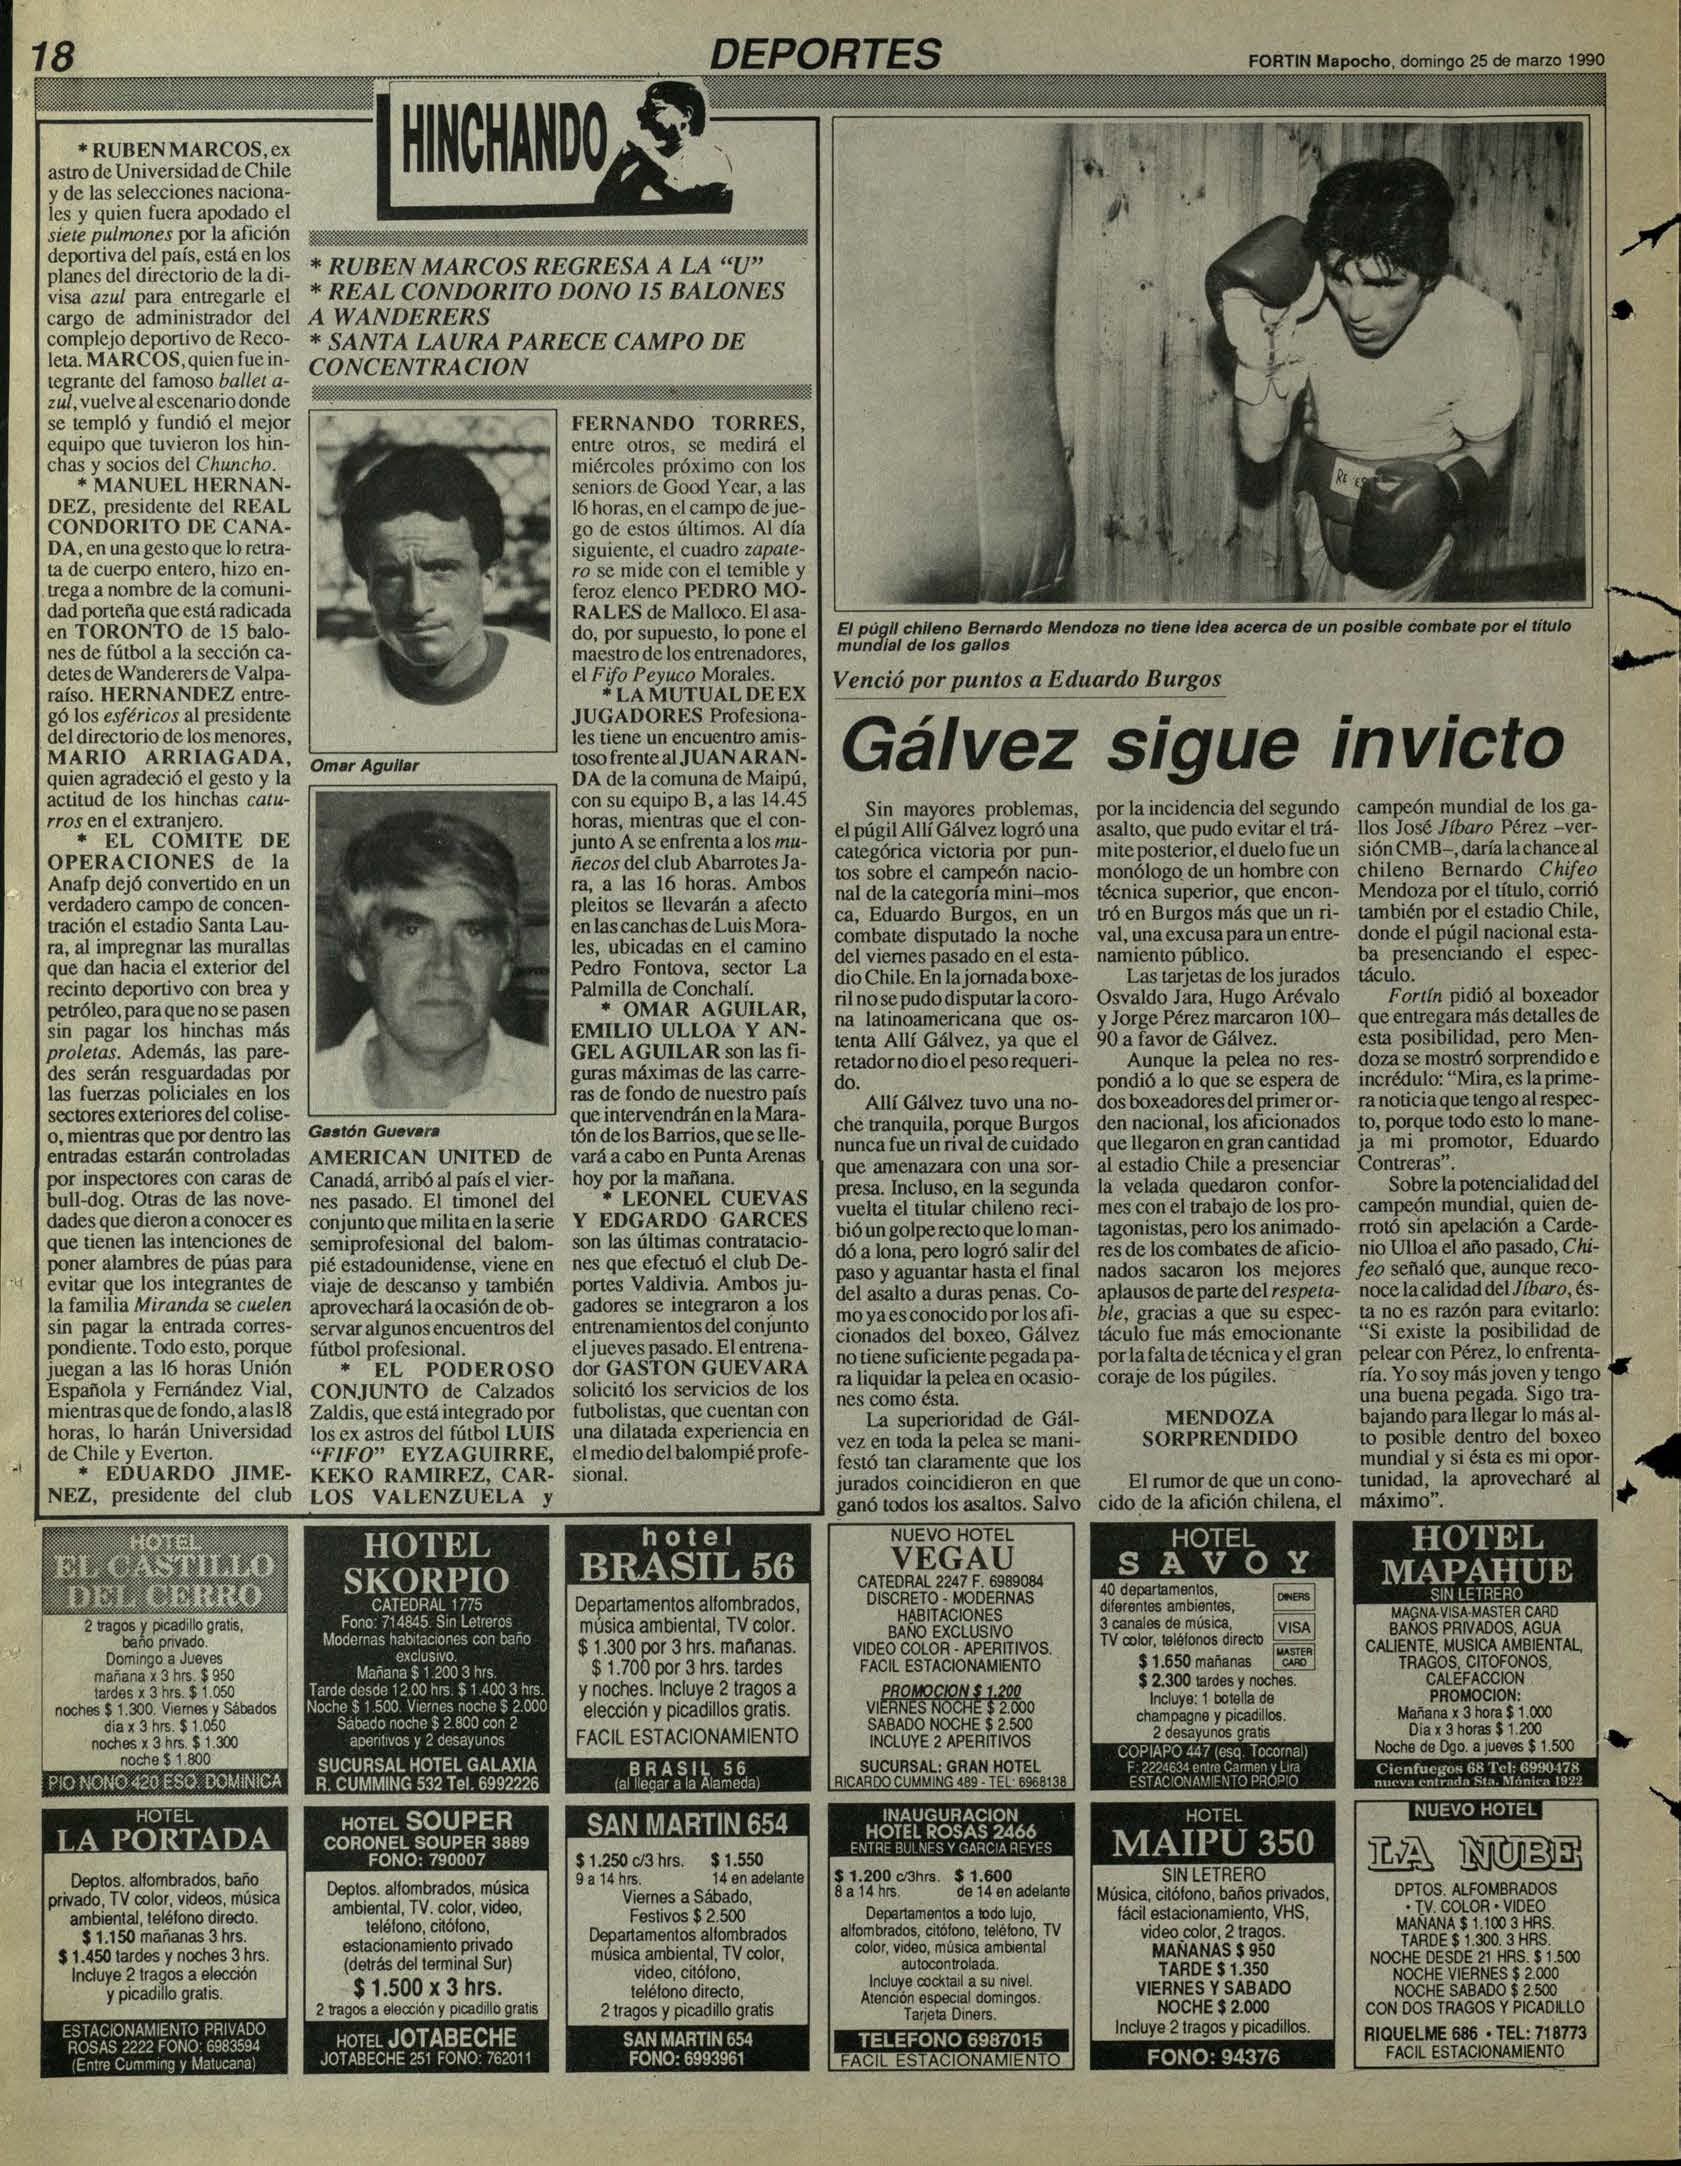 DEPORTES FORTIN Mapocho, domingo 25 de marzo 1990......... * RUBEN MARCOS, ex astro de Universidad (le Chile y (de las selecciones nacionales y quien fuera apodado el.